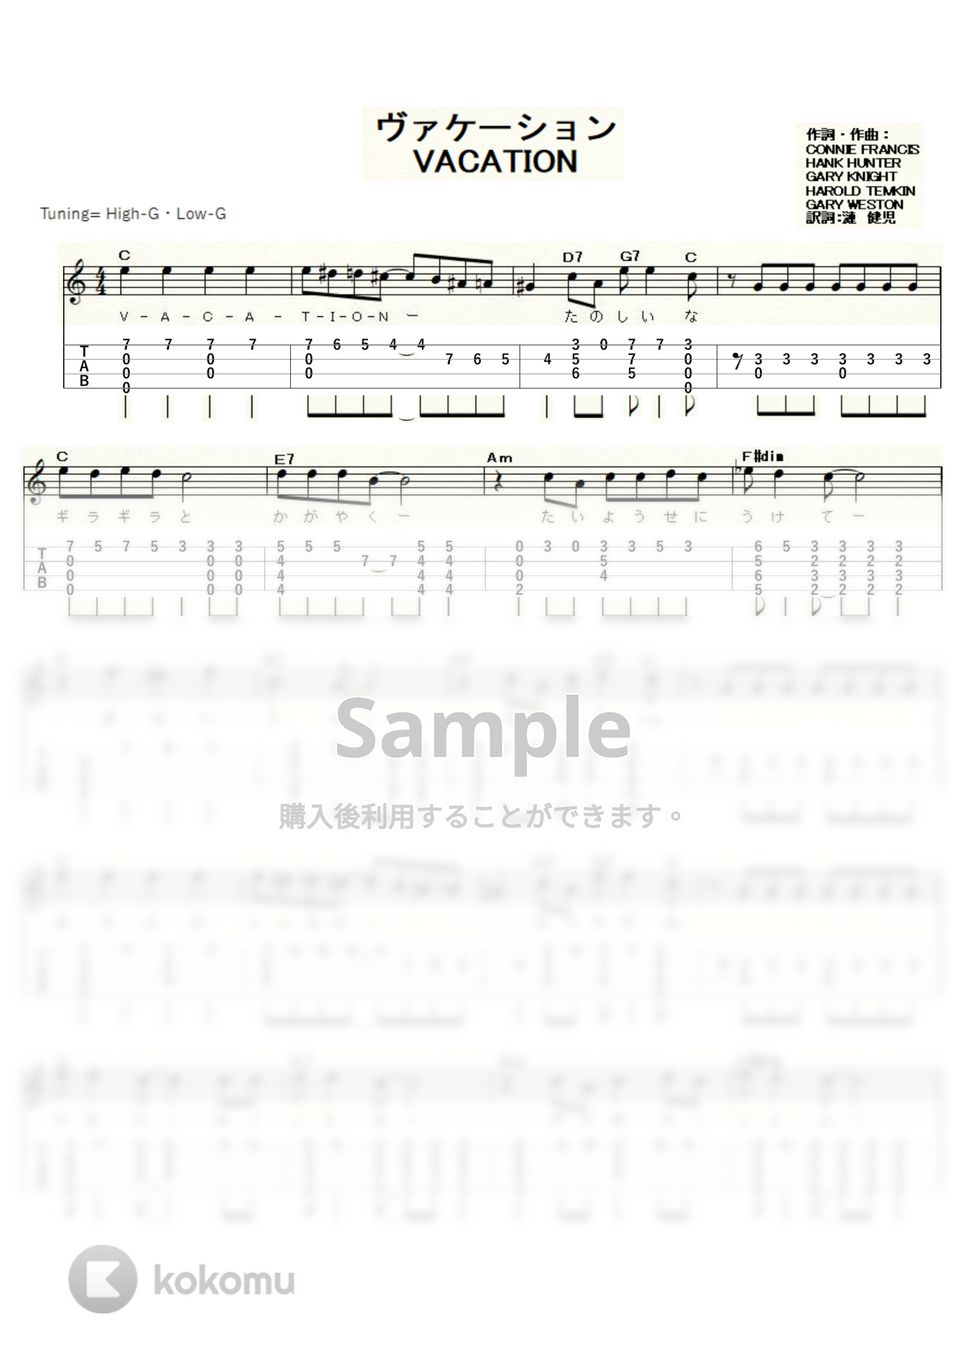 コニー・フランシス/弘田三枝子 - VACATION (ｳｸﾚﾚｿﾛ/High-G・Low-G/中級) by ukulelepapa